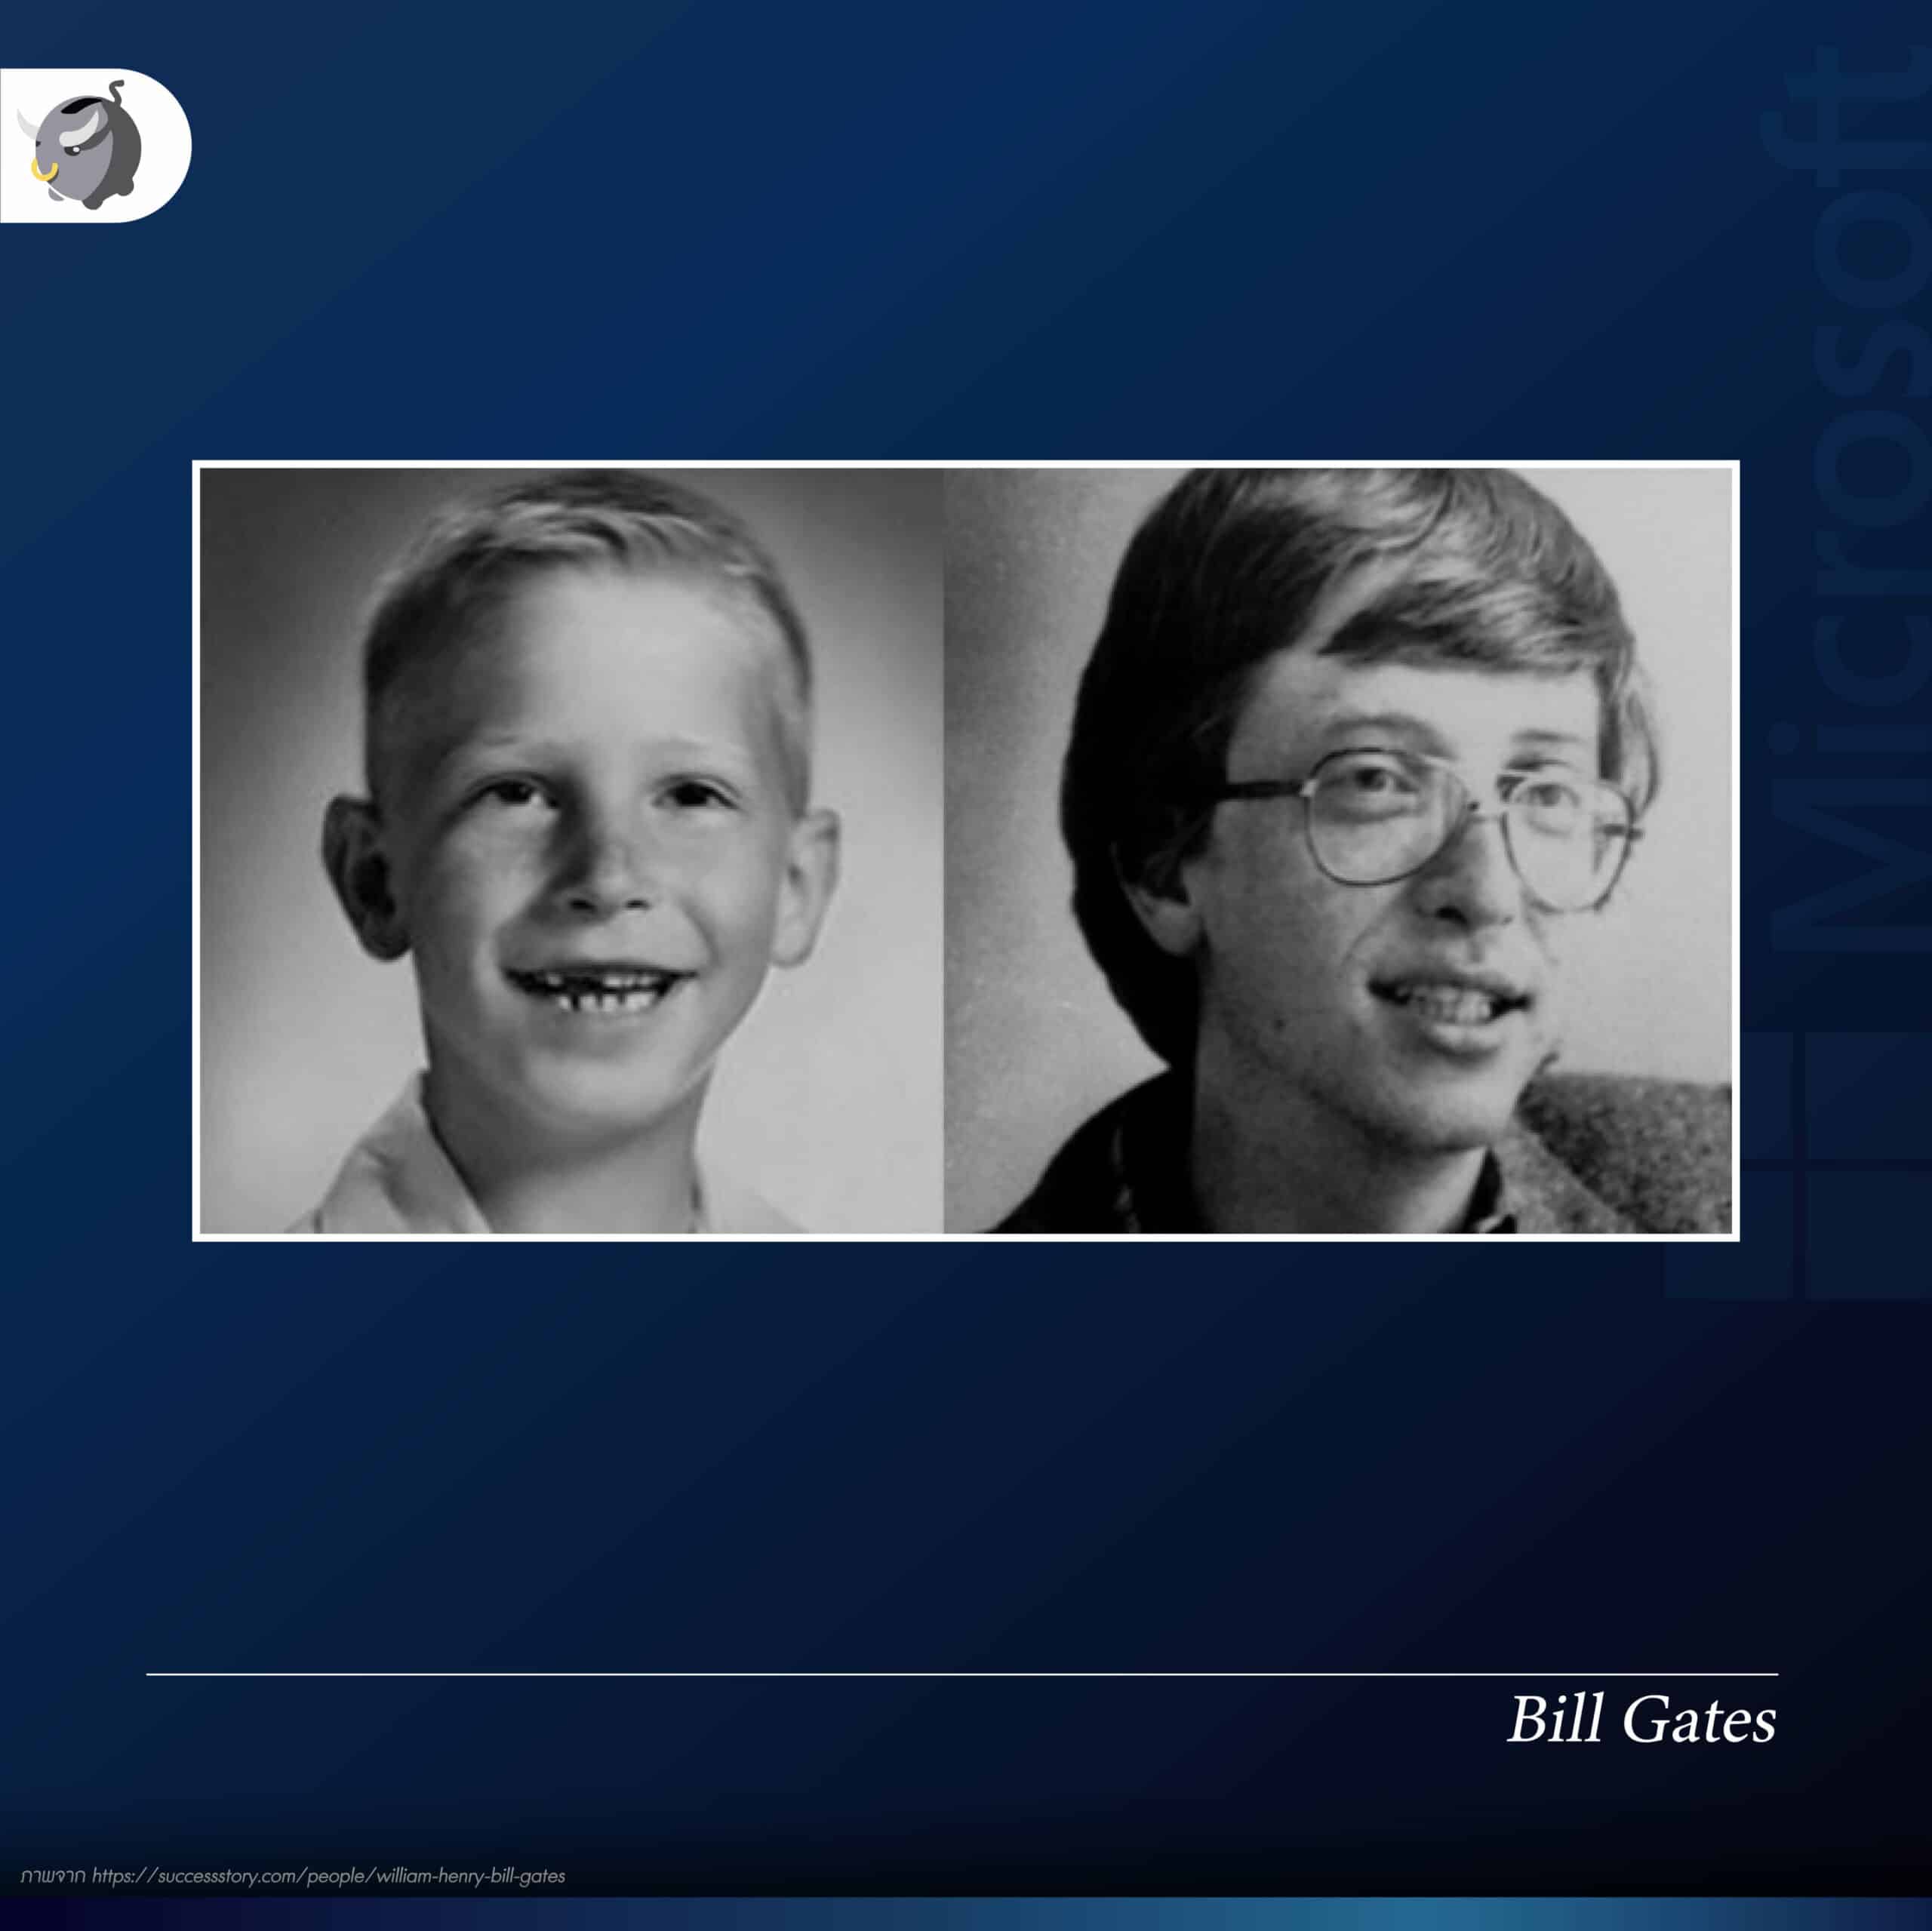 ส่องประวัติ Bill Gates เจ้าพ่อ Microsoft ทั้งด้านสว่างและด้านมืด